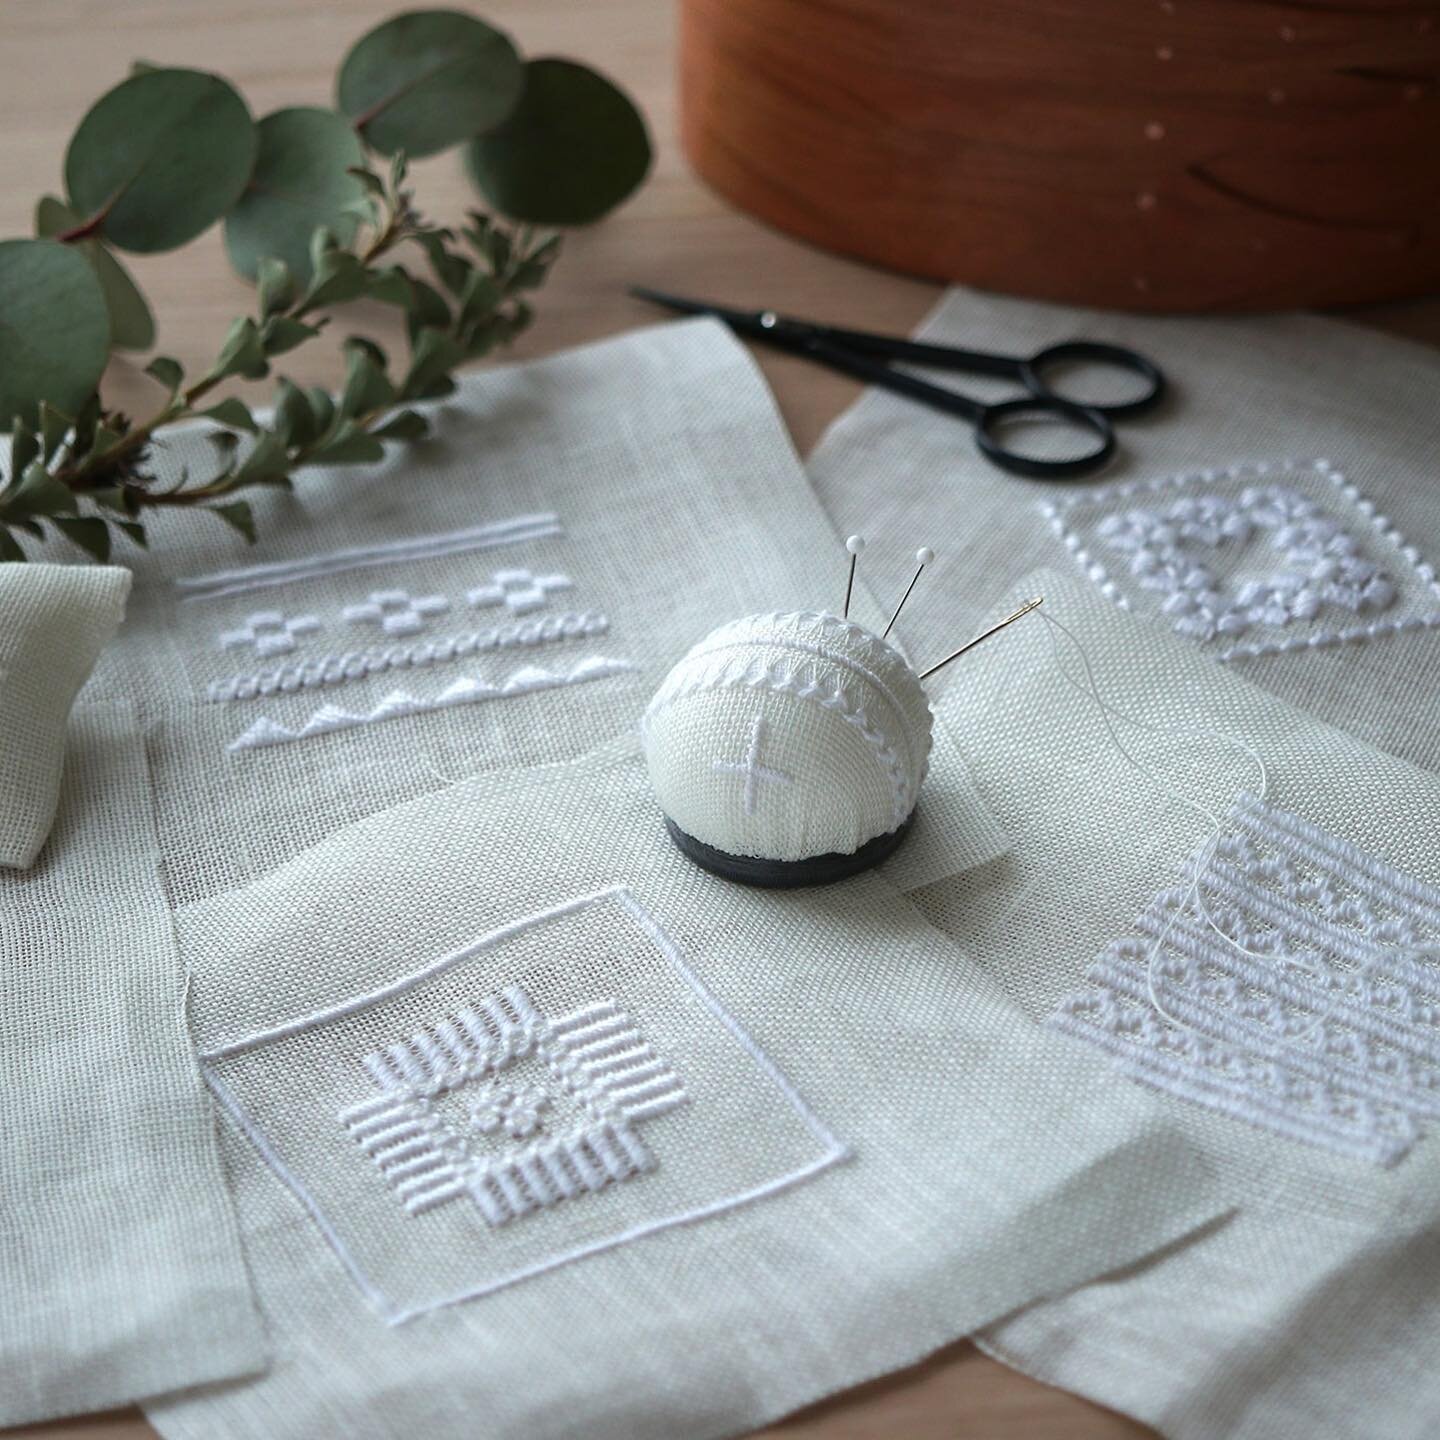 ＼＊はじめての白糸刺繍🪡体験レッスン✨＊／⠀⁠⠀⁠⁠⁠⁠
.⠀⁠⠀⁠⁠⁠⁠⠀⁠⁠⁠⁠
今日は、新しい白糸刺繍の体験レッスンのご紹介です😊⁠
.⠀⁠⠀⁠
白糸刺しゅうとは、白い糸を用いて布に模様や装飾を刺していく伝統技法のこと。😊⁠⁠⁠⁠🪡⁠
⁠
デンマークのHEDEBO刺繍やノルウェーのハータンガー刺繍など、可憐な繊細さ魅力💕ですが、⁠
⁠
⁠
- やってみたいけど難しそう、⁠
- 何から始めていいのか分からない　、⁠
⁠
という声もよくお聞きします😣　⁠
⁠
そんな方のために白糸刺